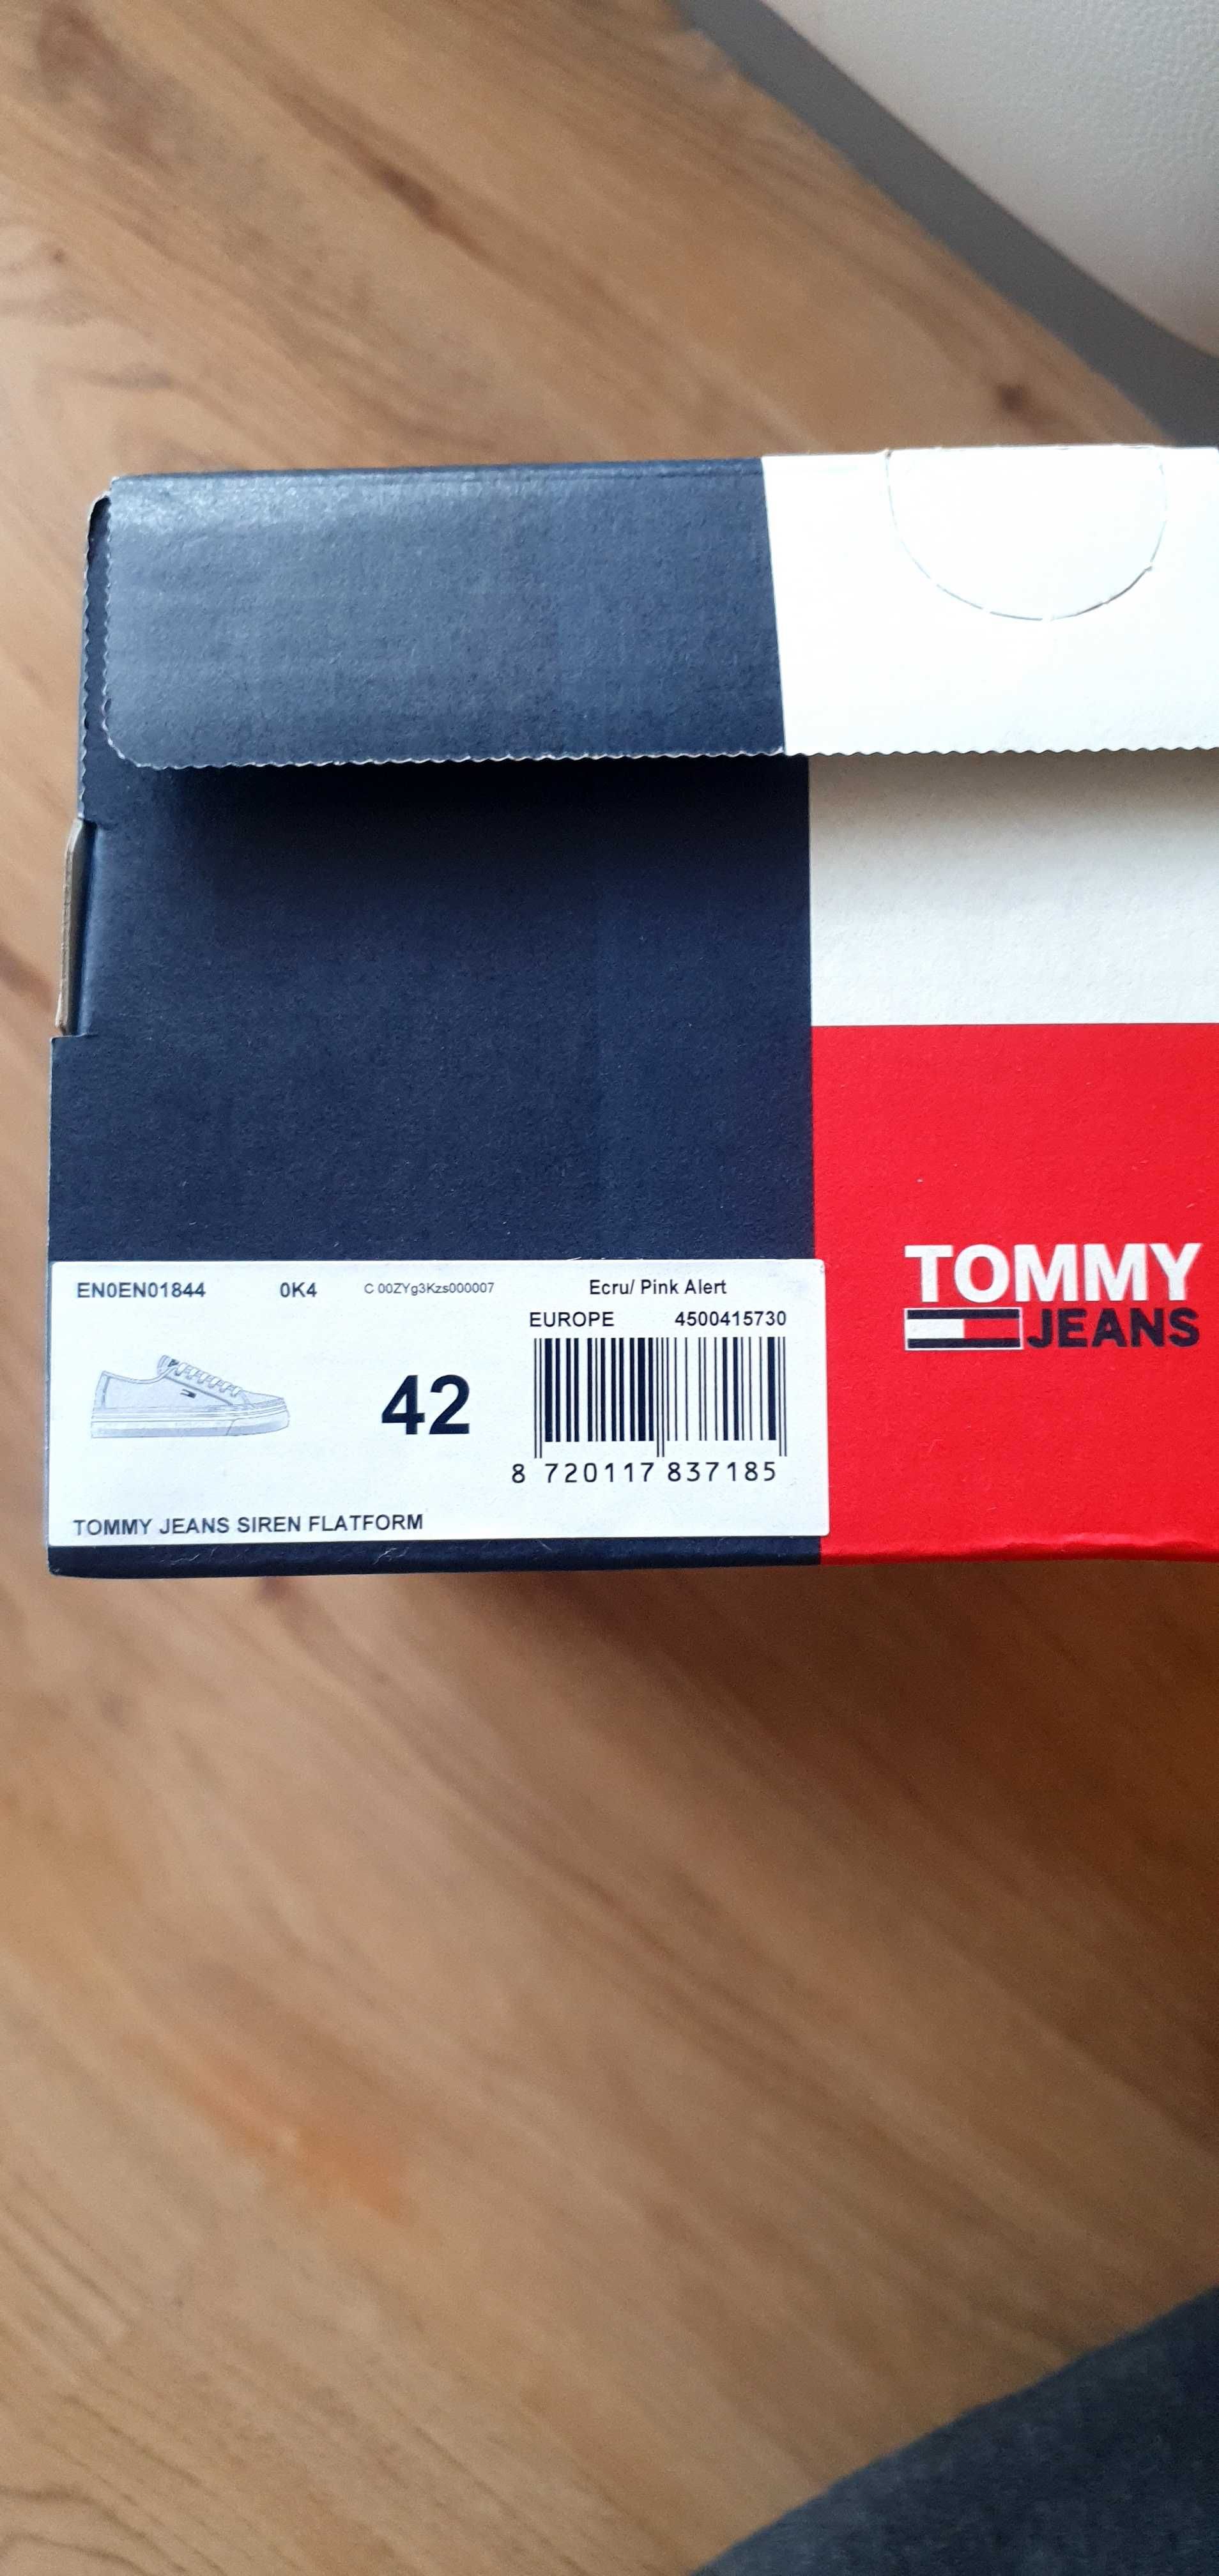 Buty - tramoki marki Tommy Jeans